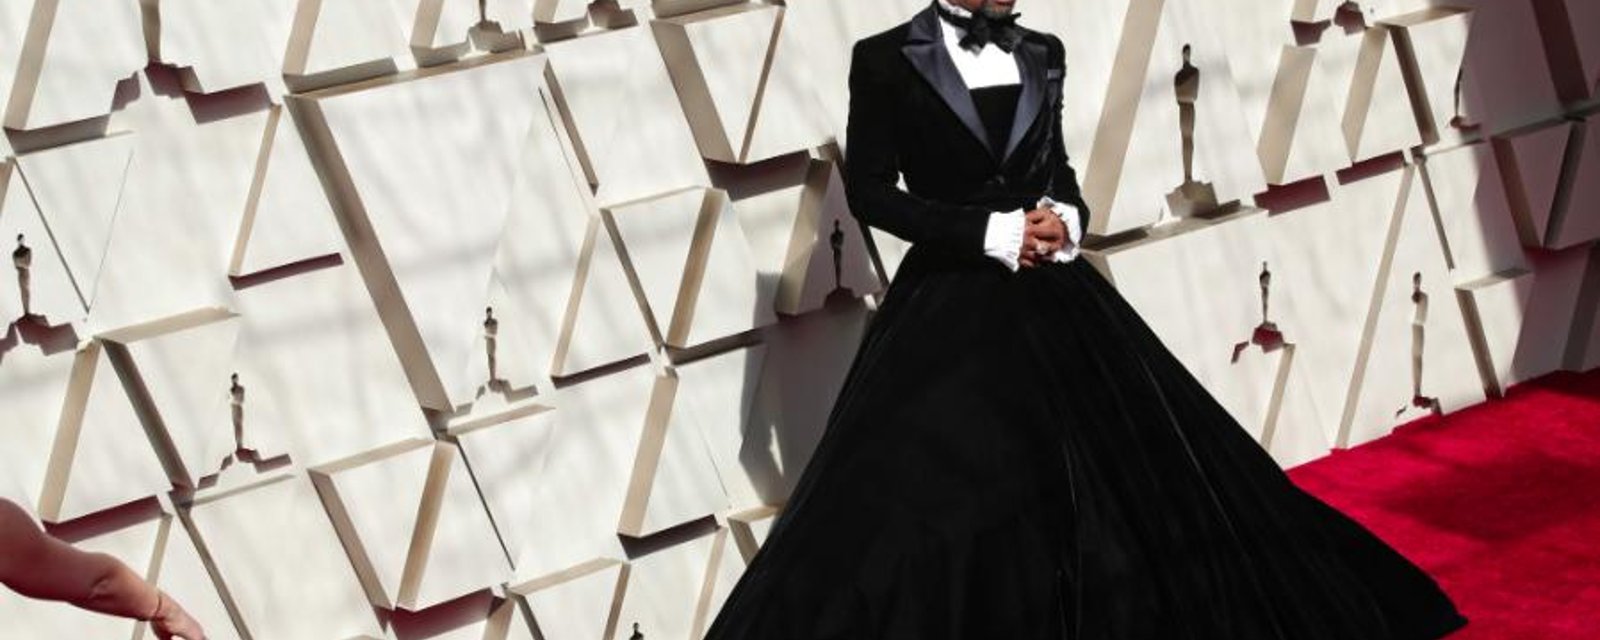 Le look de Billy Porter fait tourner toutes les têtes sur le tapis rouge des Oscars